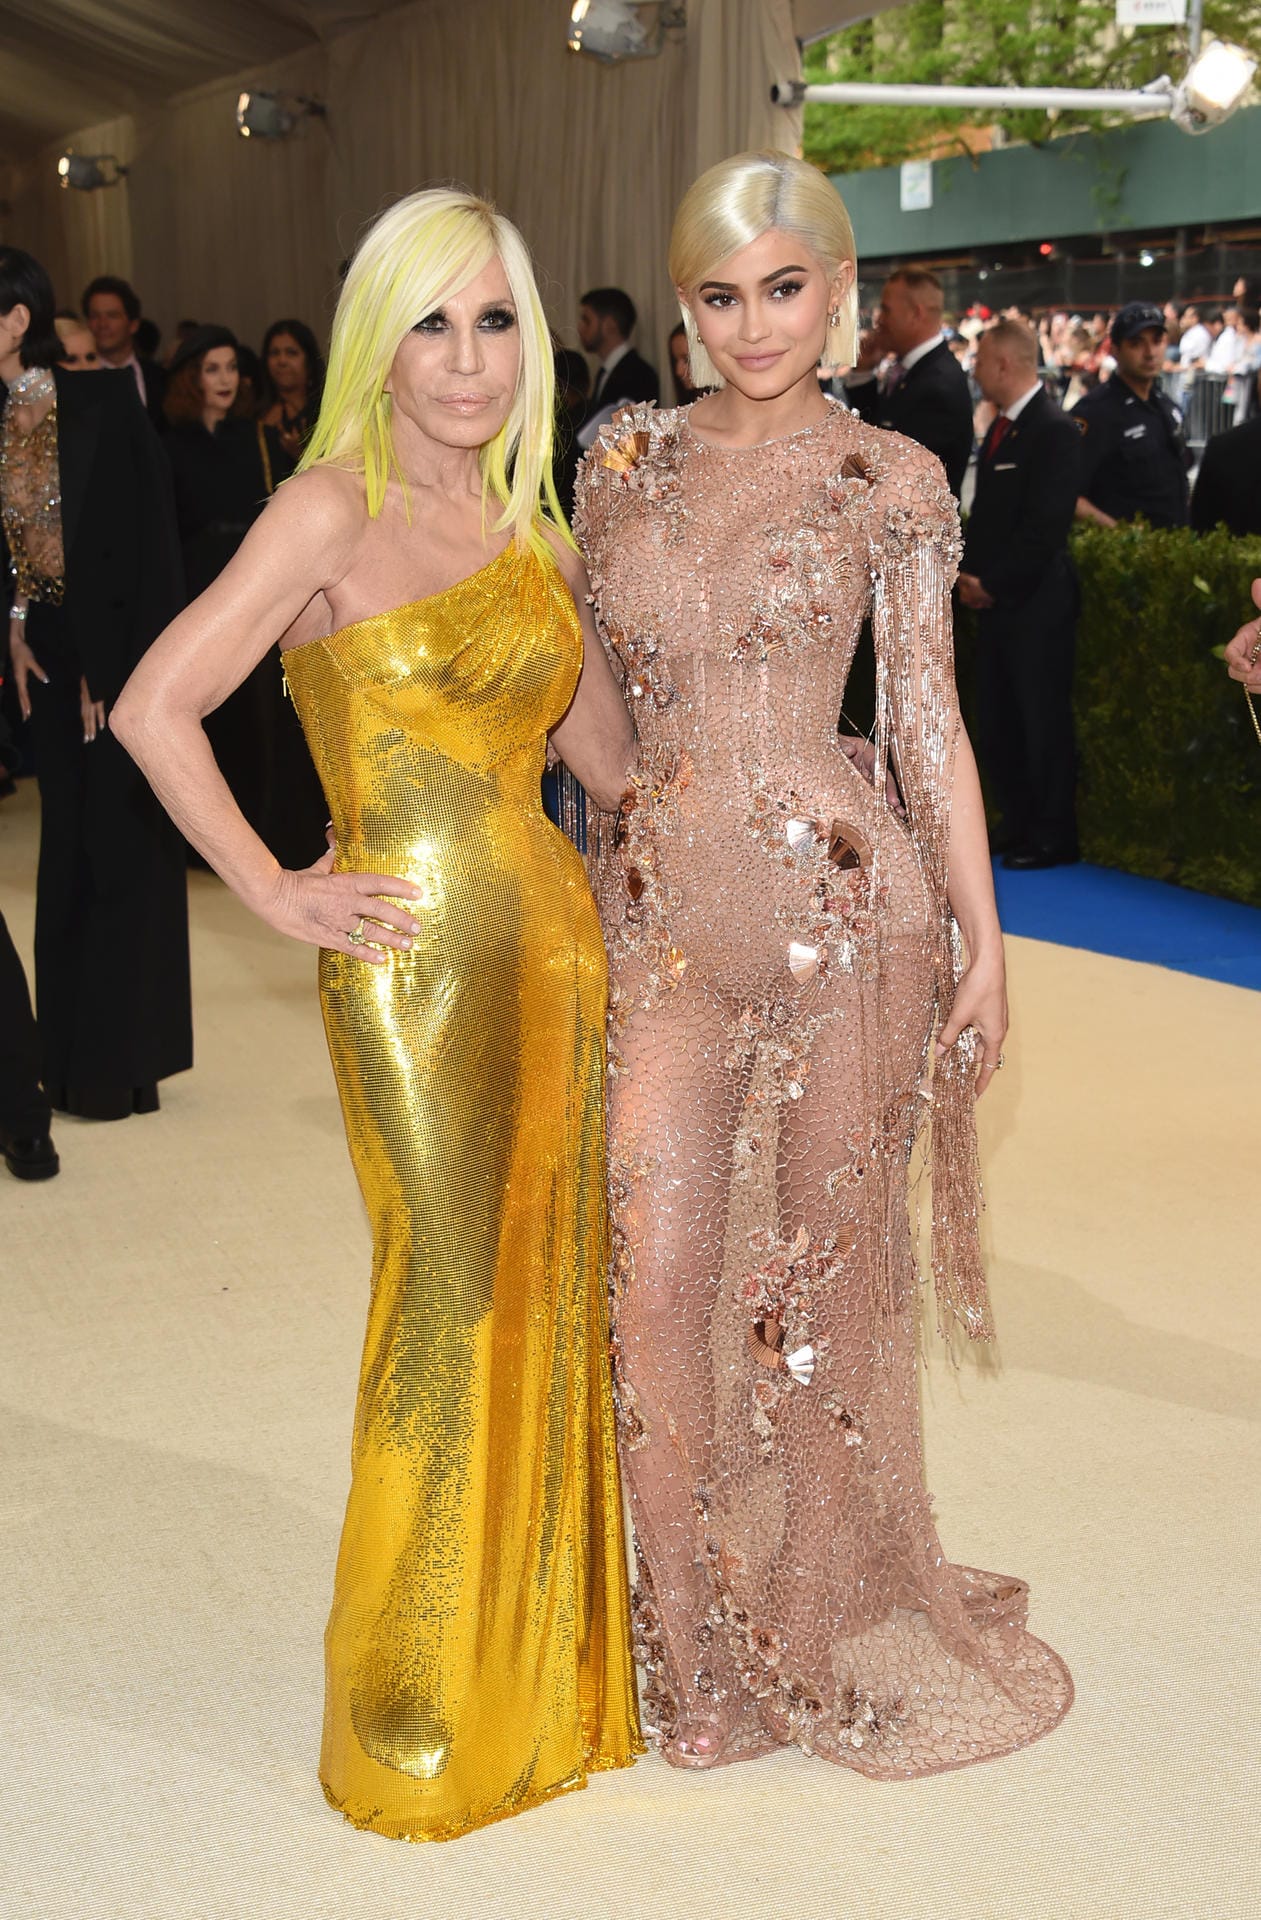 Reality-Star Kylie Jenner wählte eine nudefarbene Abendrobe und Donatella Versace einen goldenen Glitzerfummel.